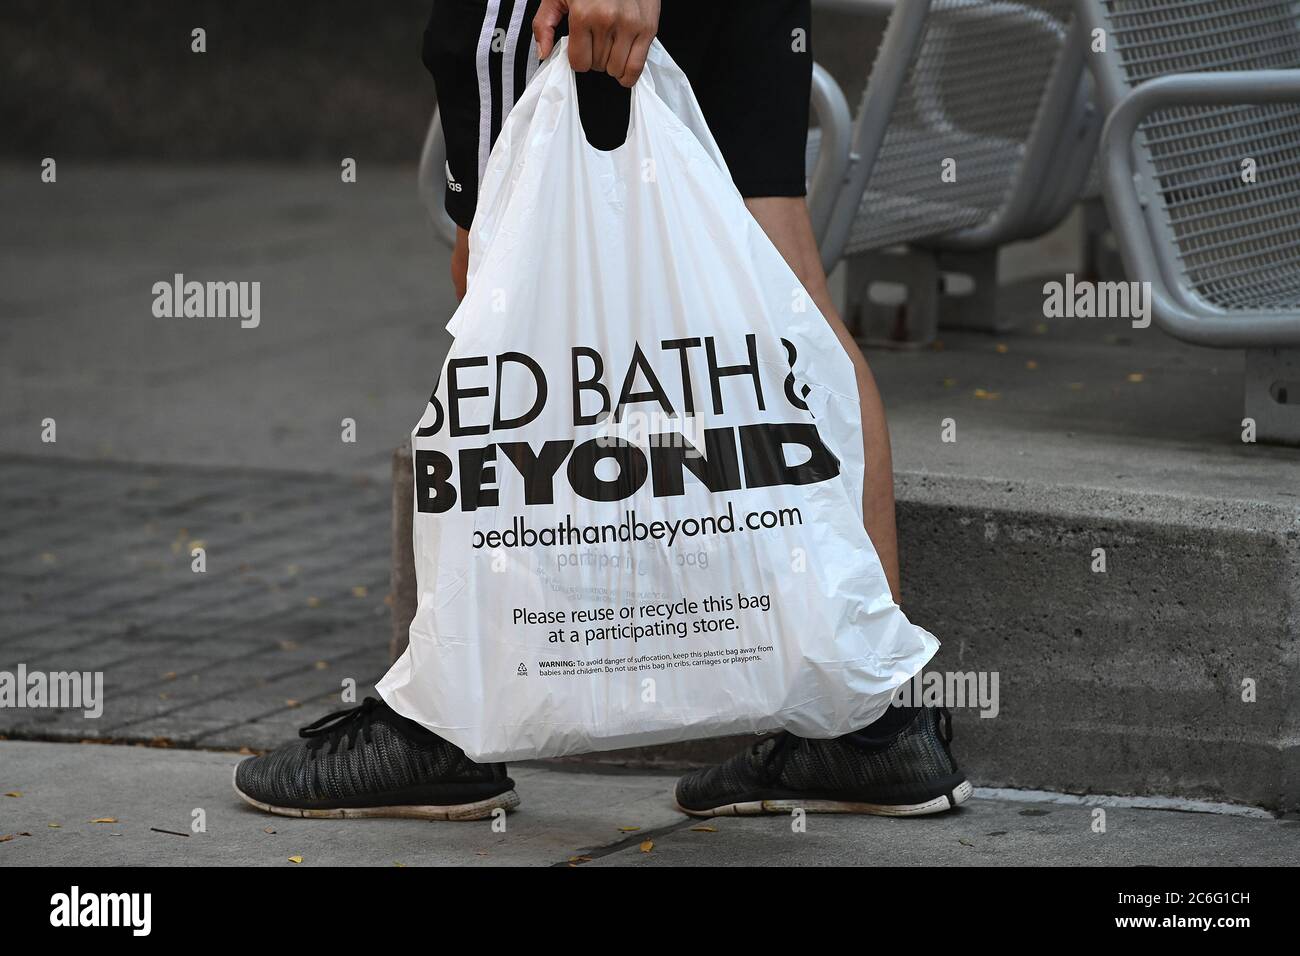 New York City, USA. Juli 2020. Bed Bath & Beyond gab bekannt, dass es in den nächsten zwei Jahren 200 Einzelhandelsgeschäfte dauerhaft schließen wird, da der Umsatz aufgrund der wirtschaftlichen Auswirkungen der COVID-19-Pandemie, New York, NY, 9. Juli 2020, um 49 % sinkt. (Anthony Behar/Sipa USA) Quelle: SIPA USA/Alamy Live News Stockfoto